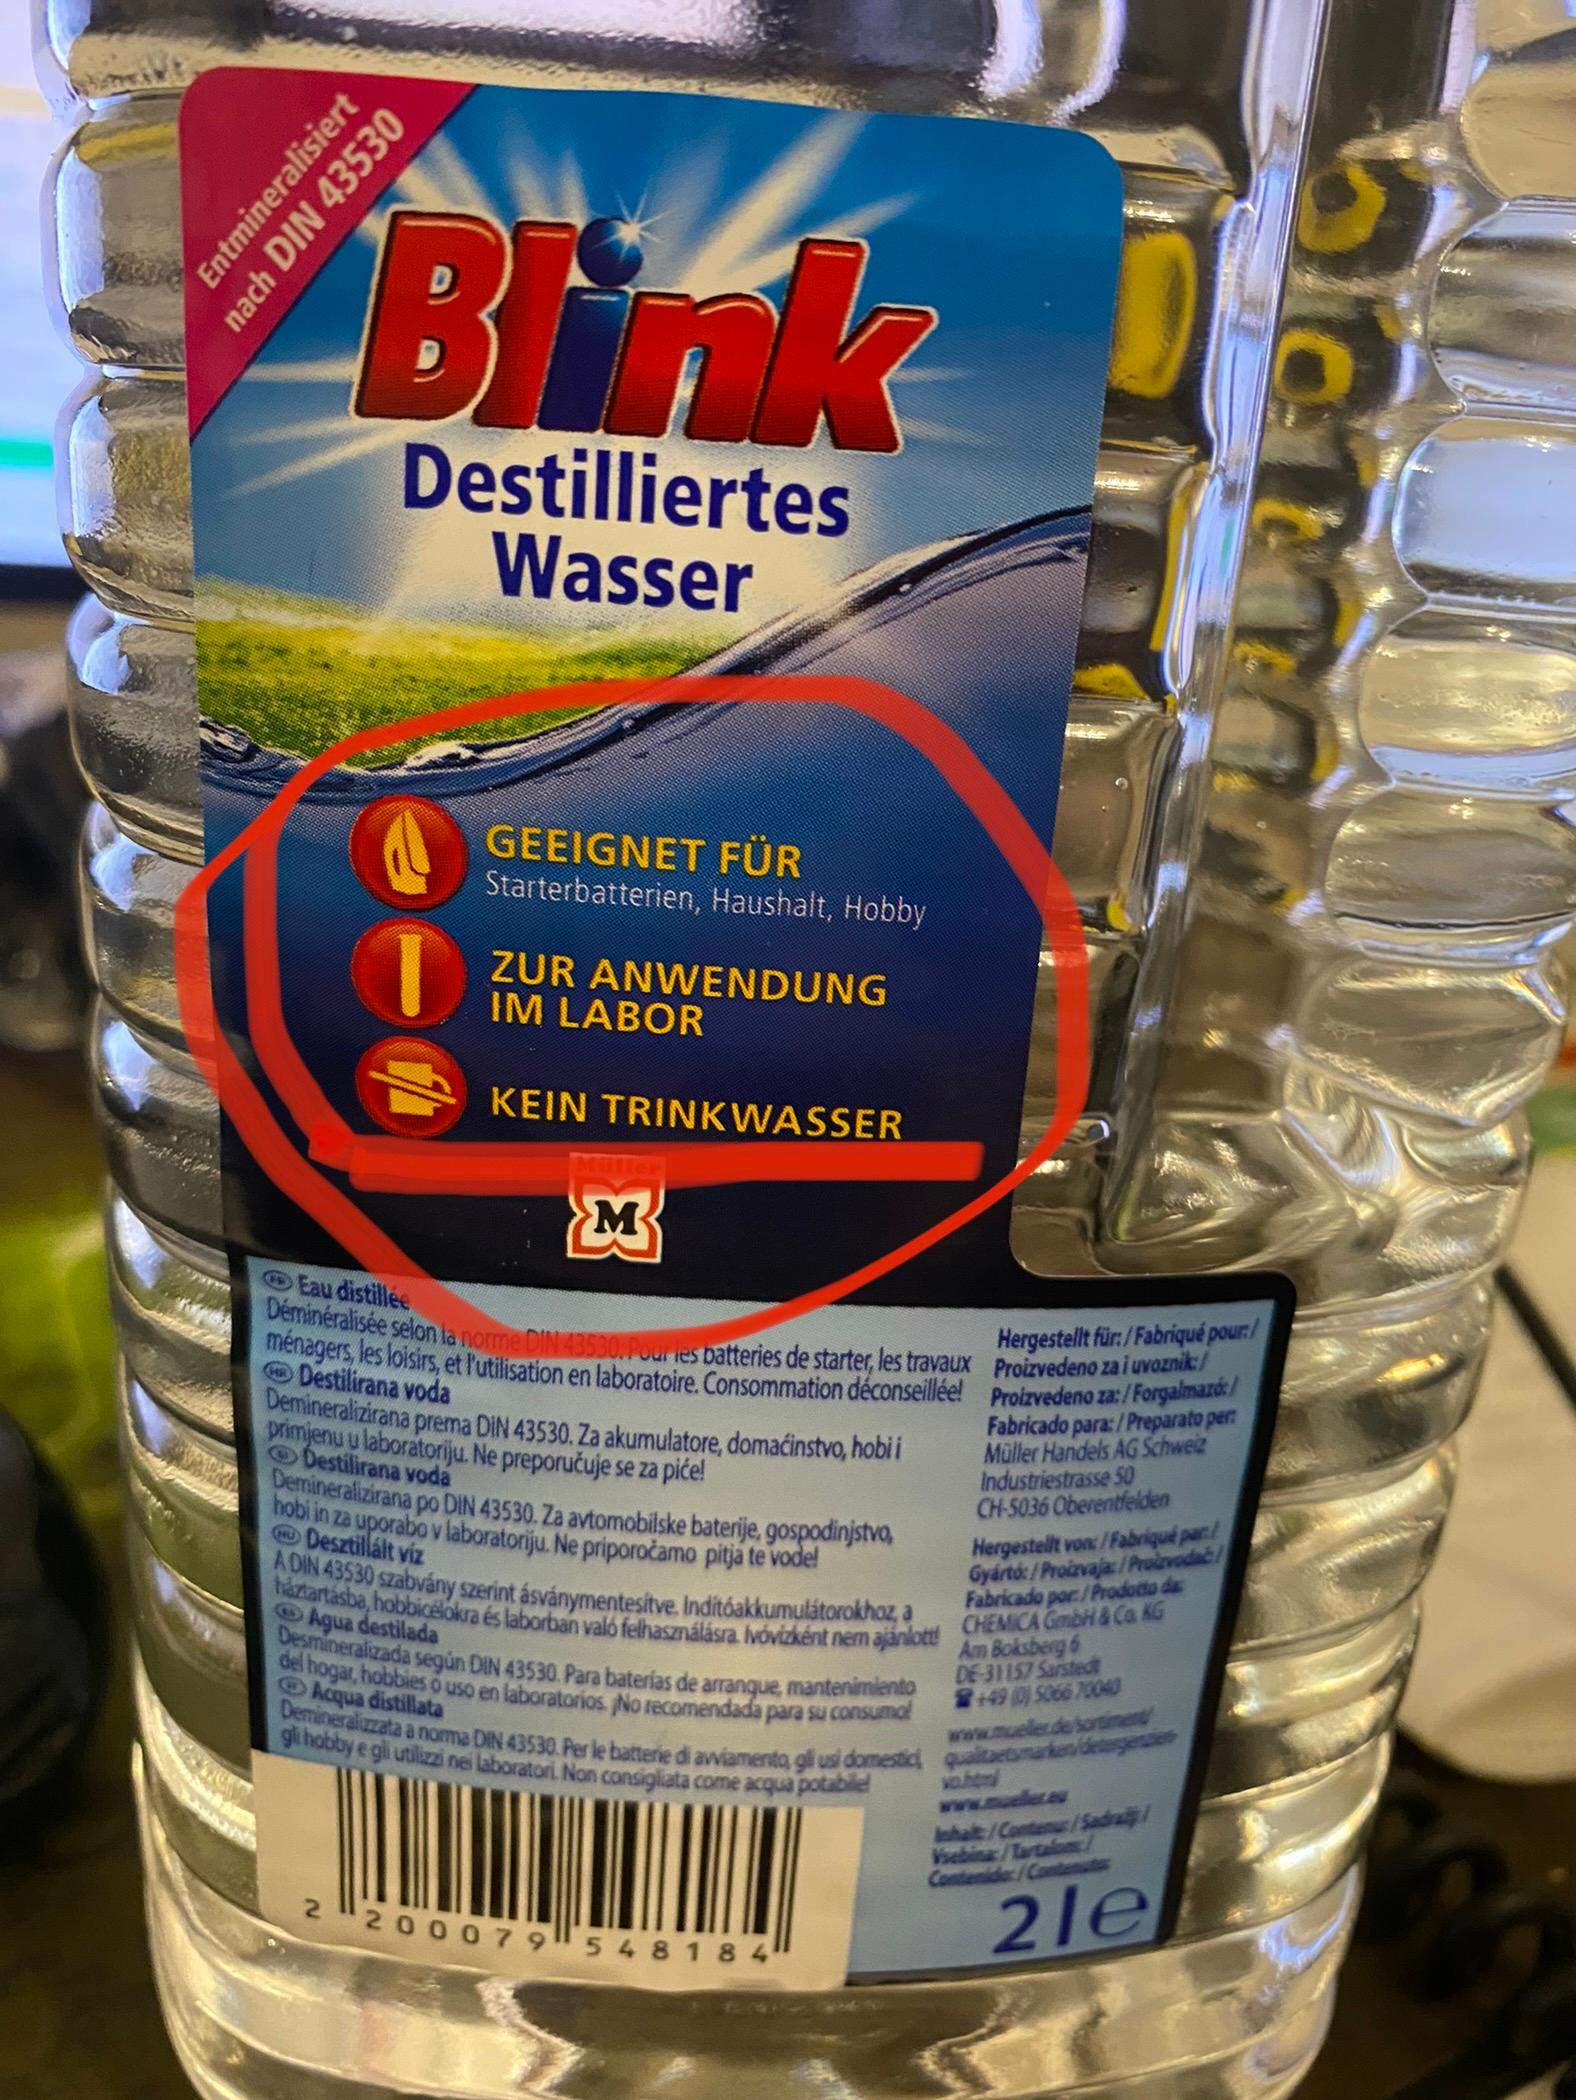 Destilliertes Wasser von Blink trinken? (Trinkwasser, Leitungswasser)